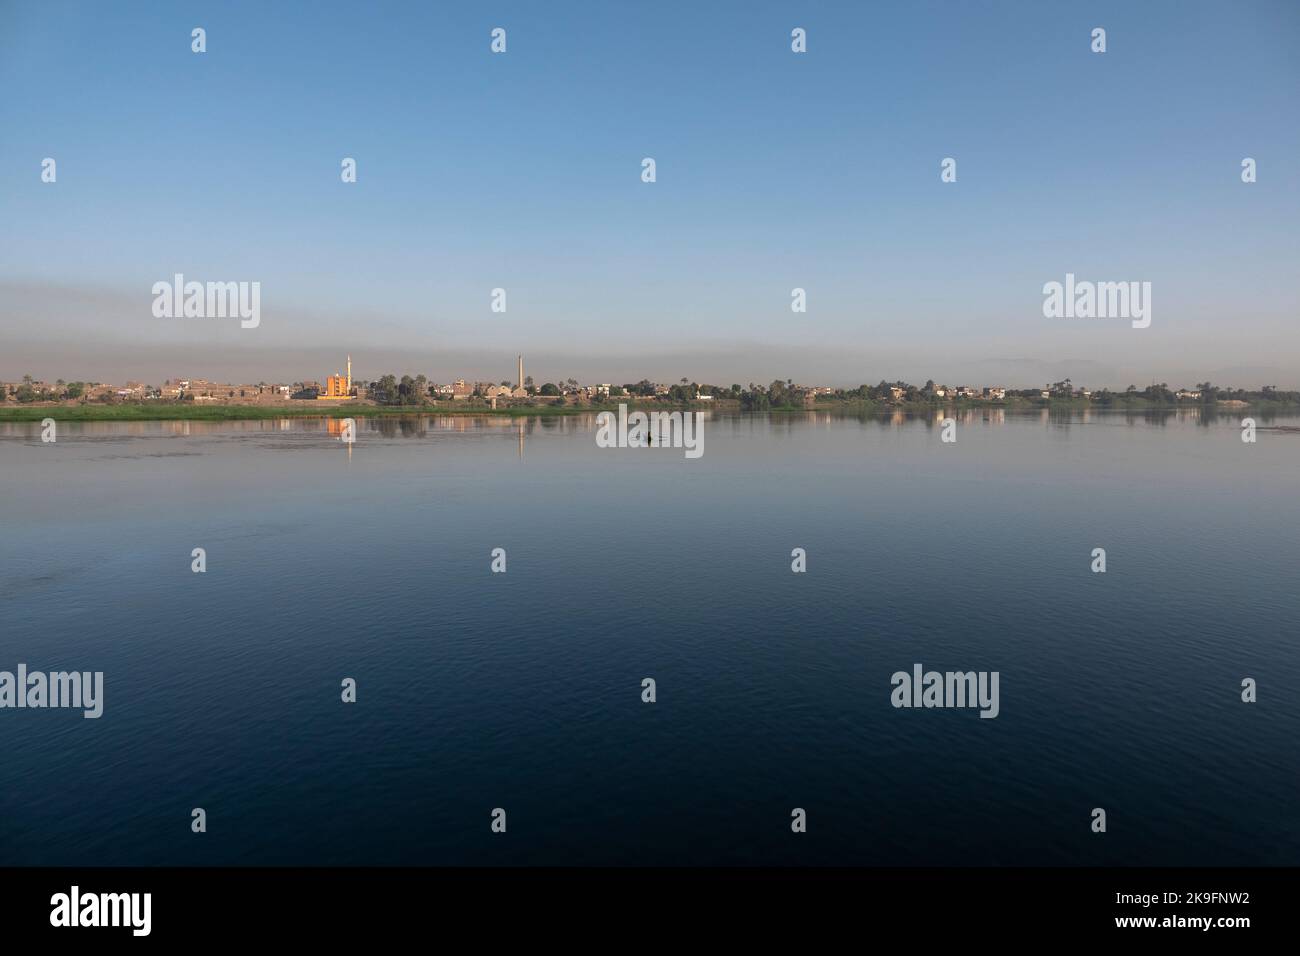 Sehr entferntes Panorama des Nil-Ufers mit einigen Häusern mit großer Wasserfläche im Vordergrund und einem kleinen Fischerboot in der Nähe des Ufers Stockfoto